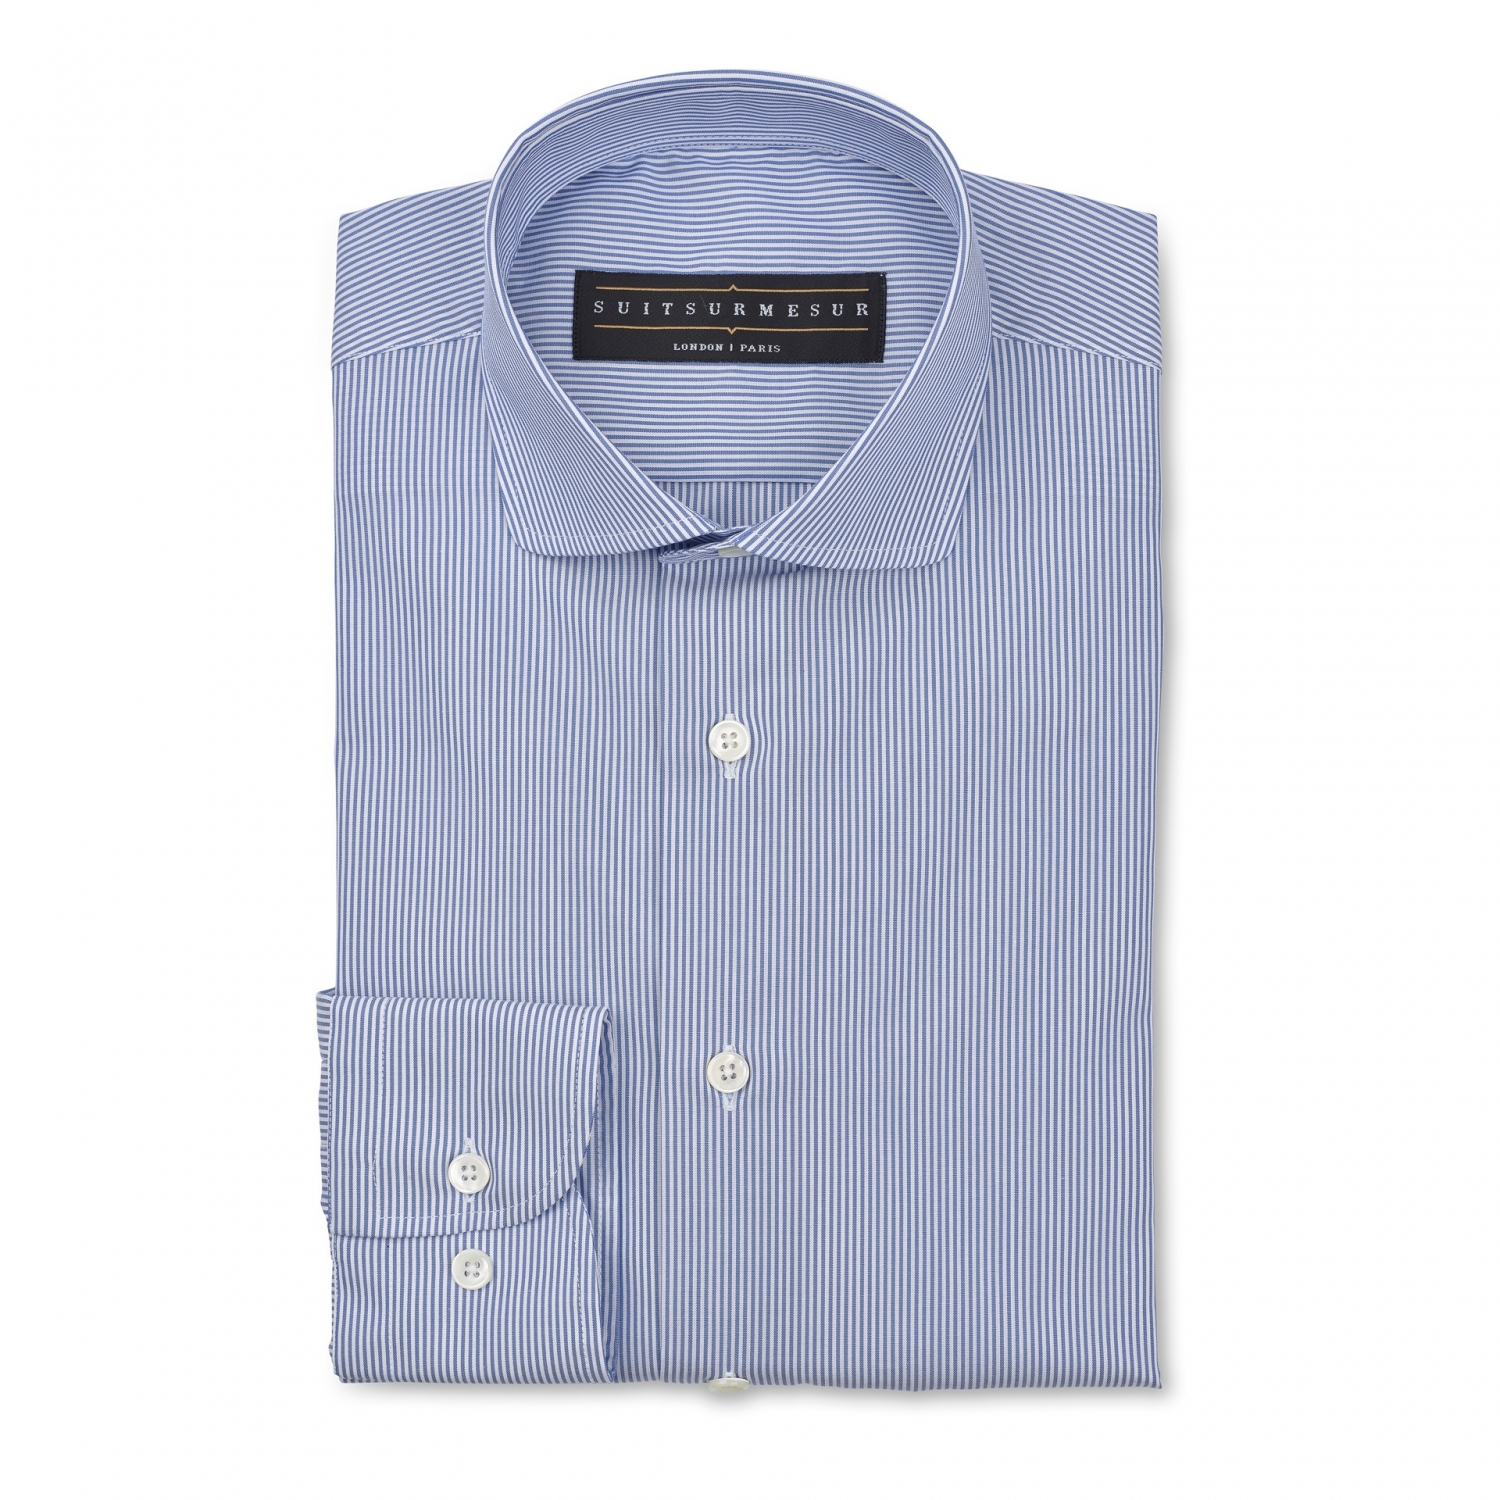 Chemise en popline bleu claire à rayures (col rond italien) – Tissu Soktas 100% coton - Faite à la main